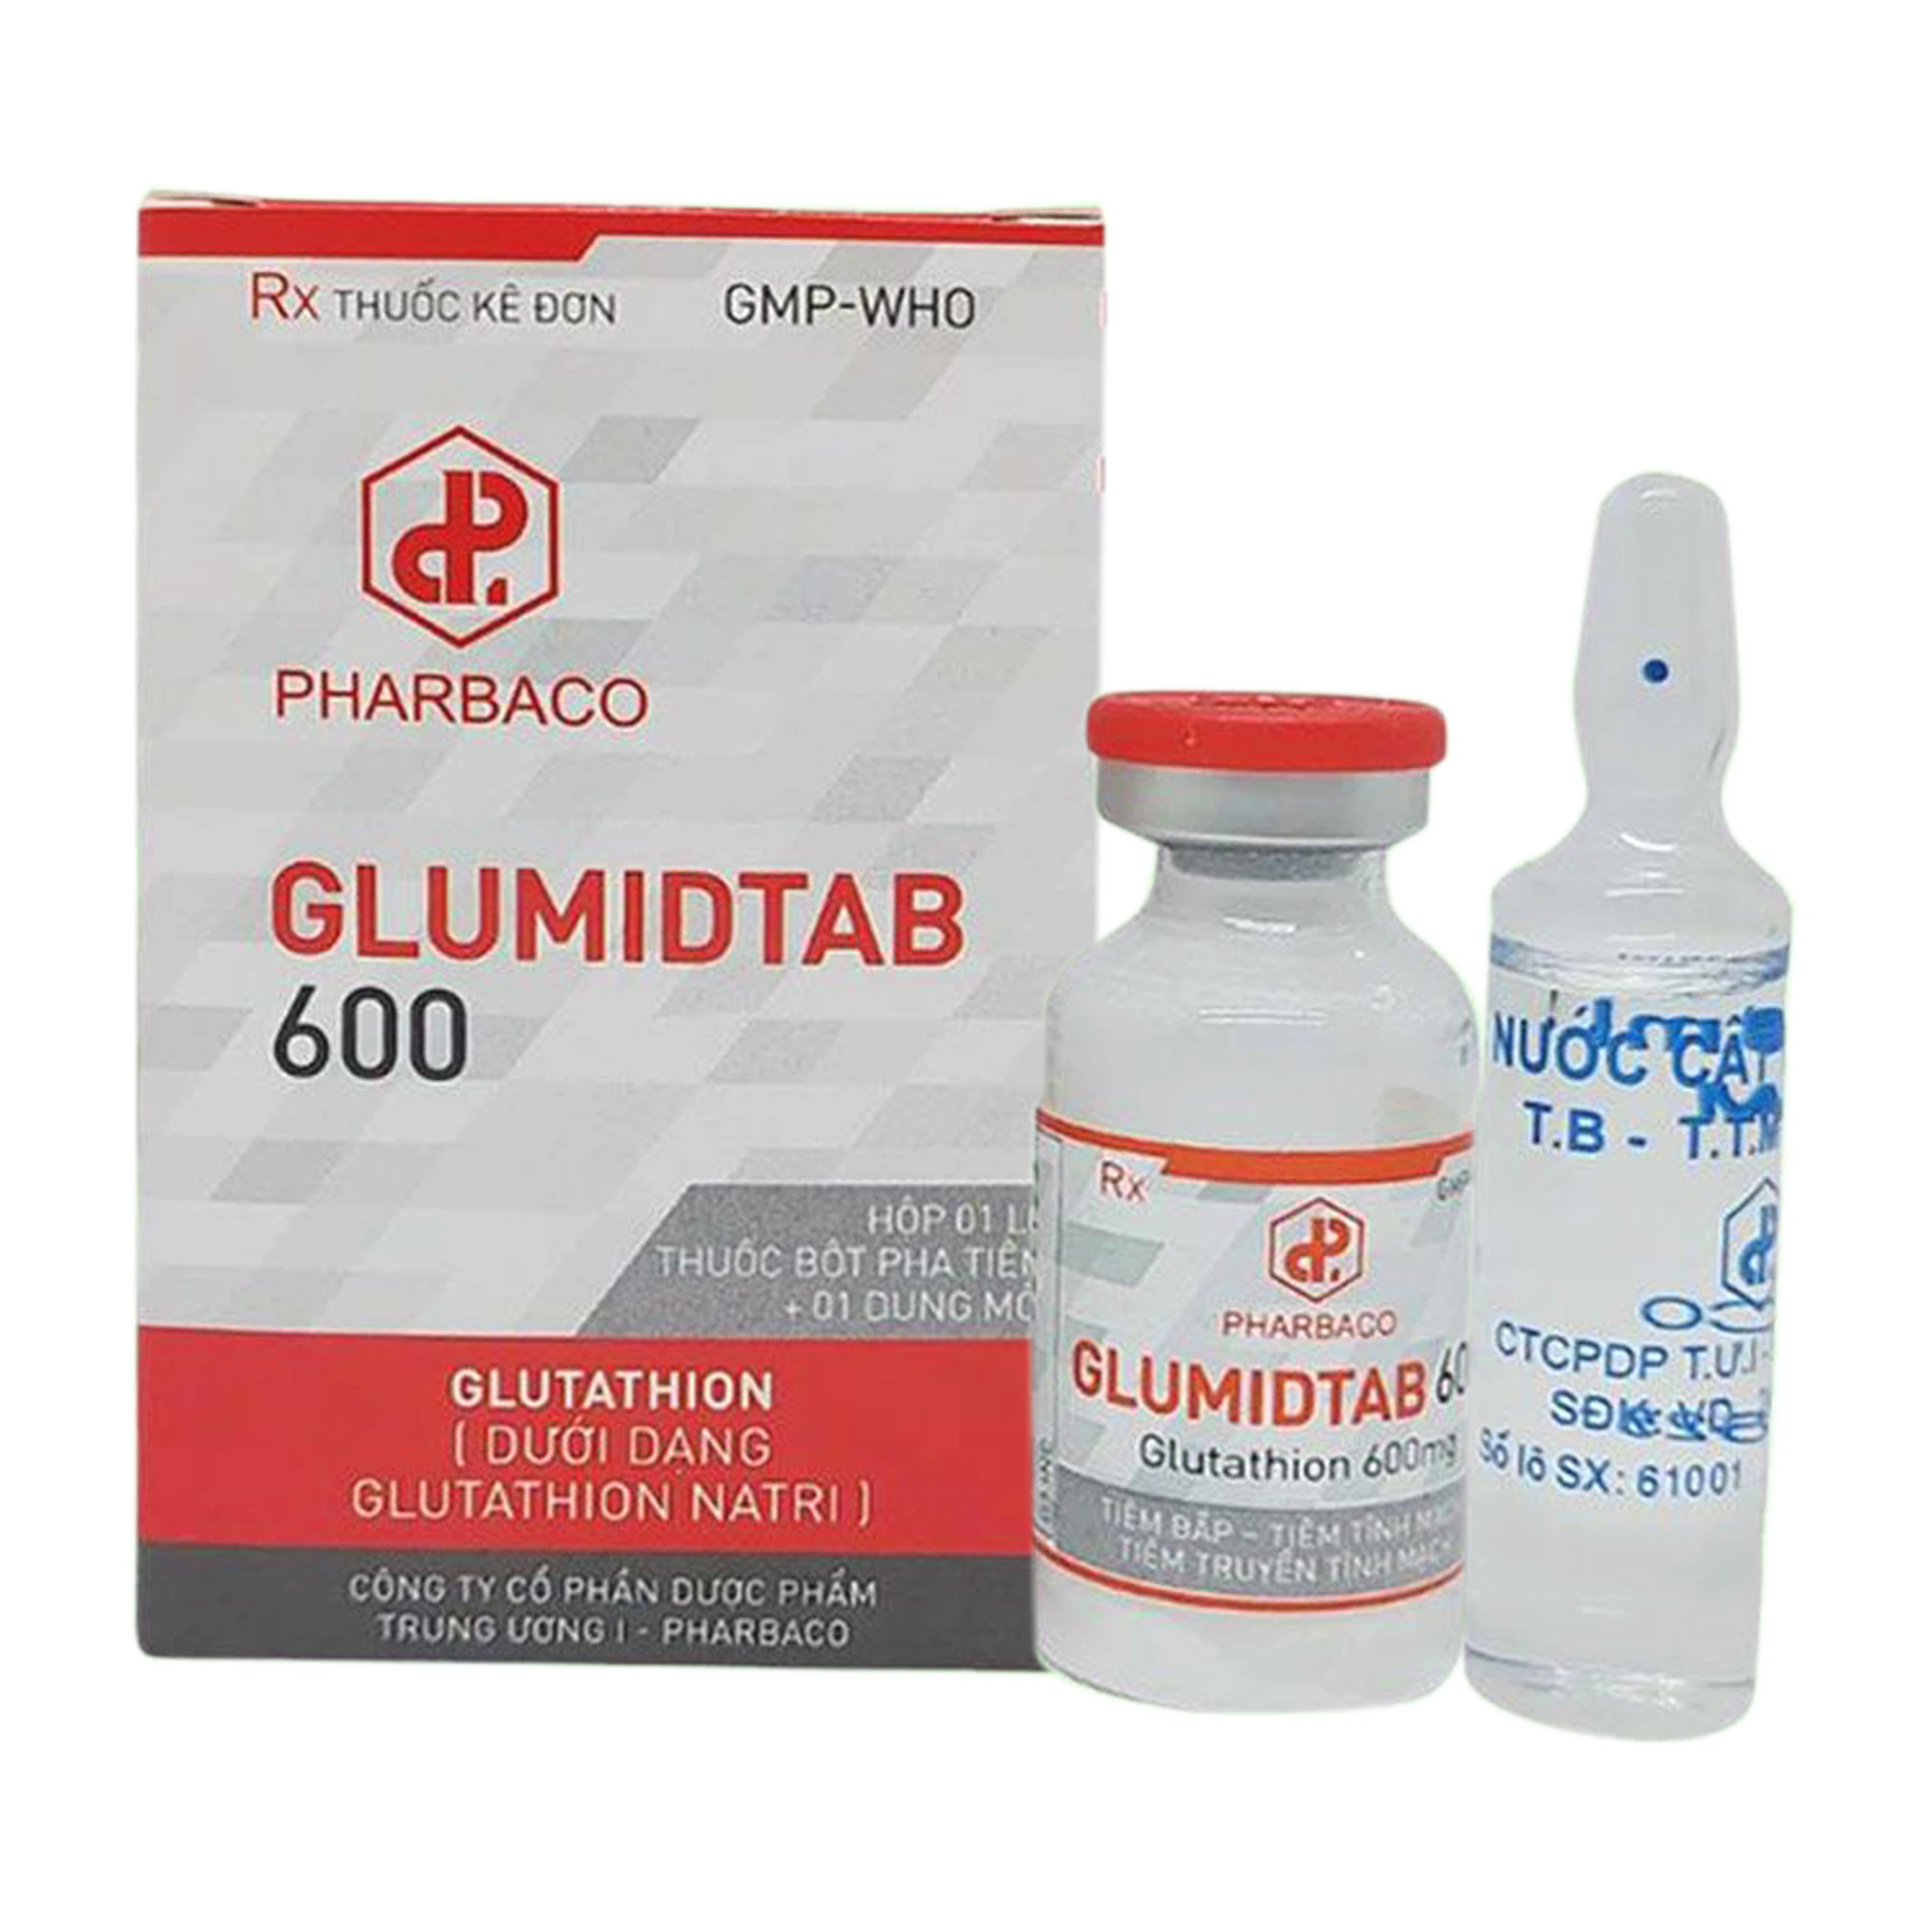 Bột pha tiêm và dung môi Glumidtab 600 Pharbaco hỗ trợ giảm độc tính trên thần kinh của xạ trị 